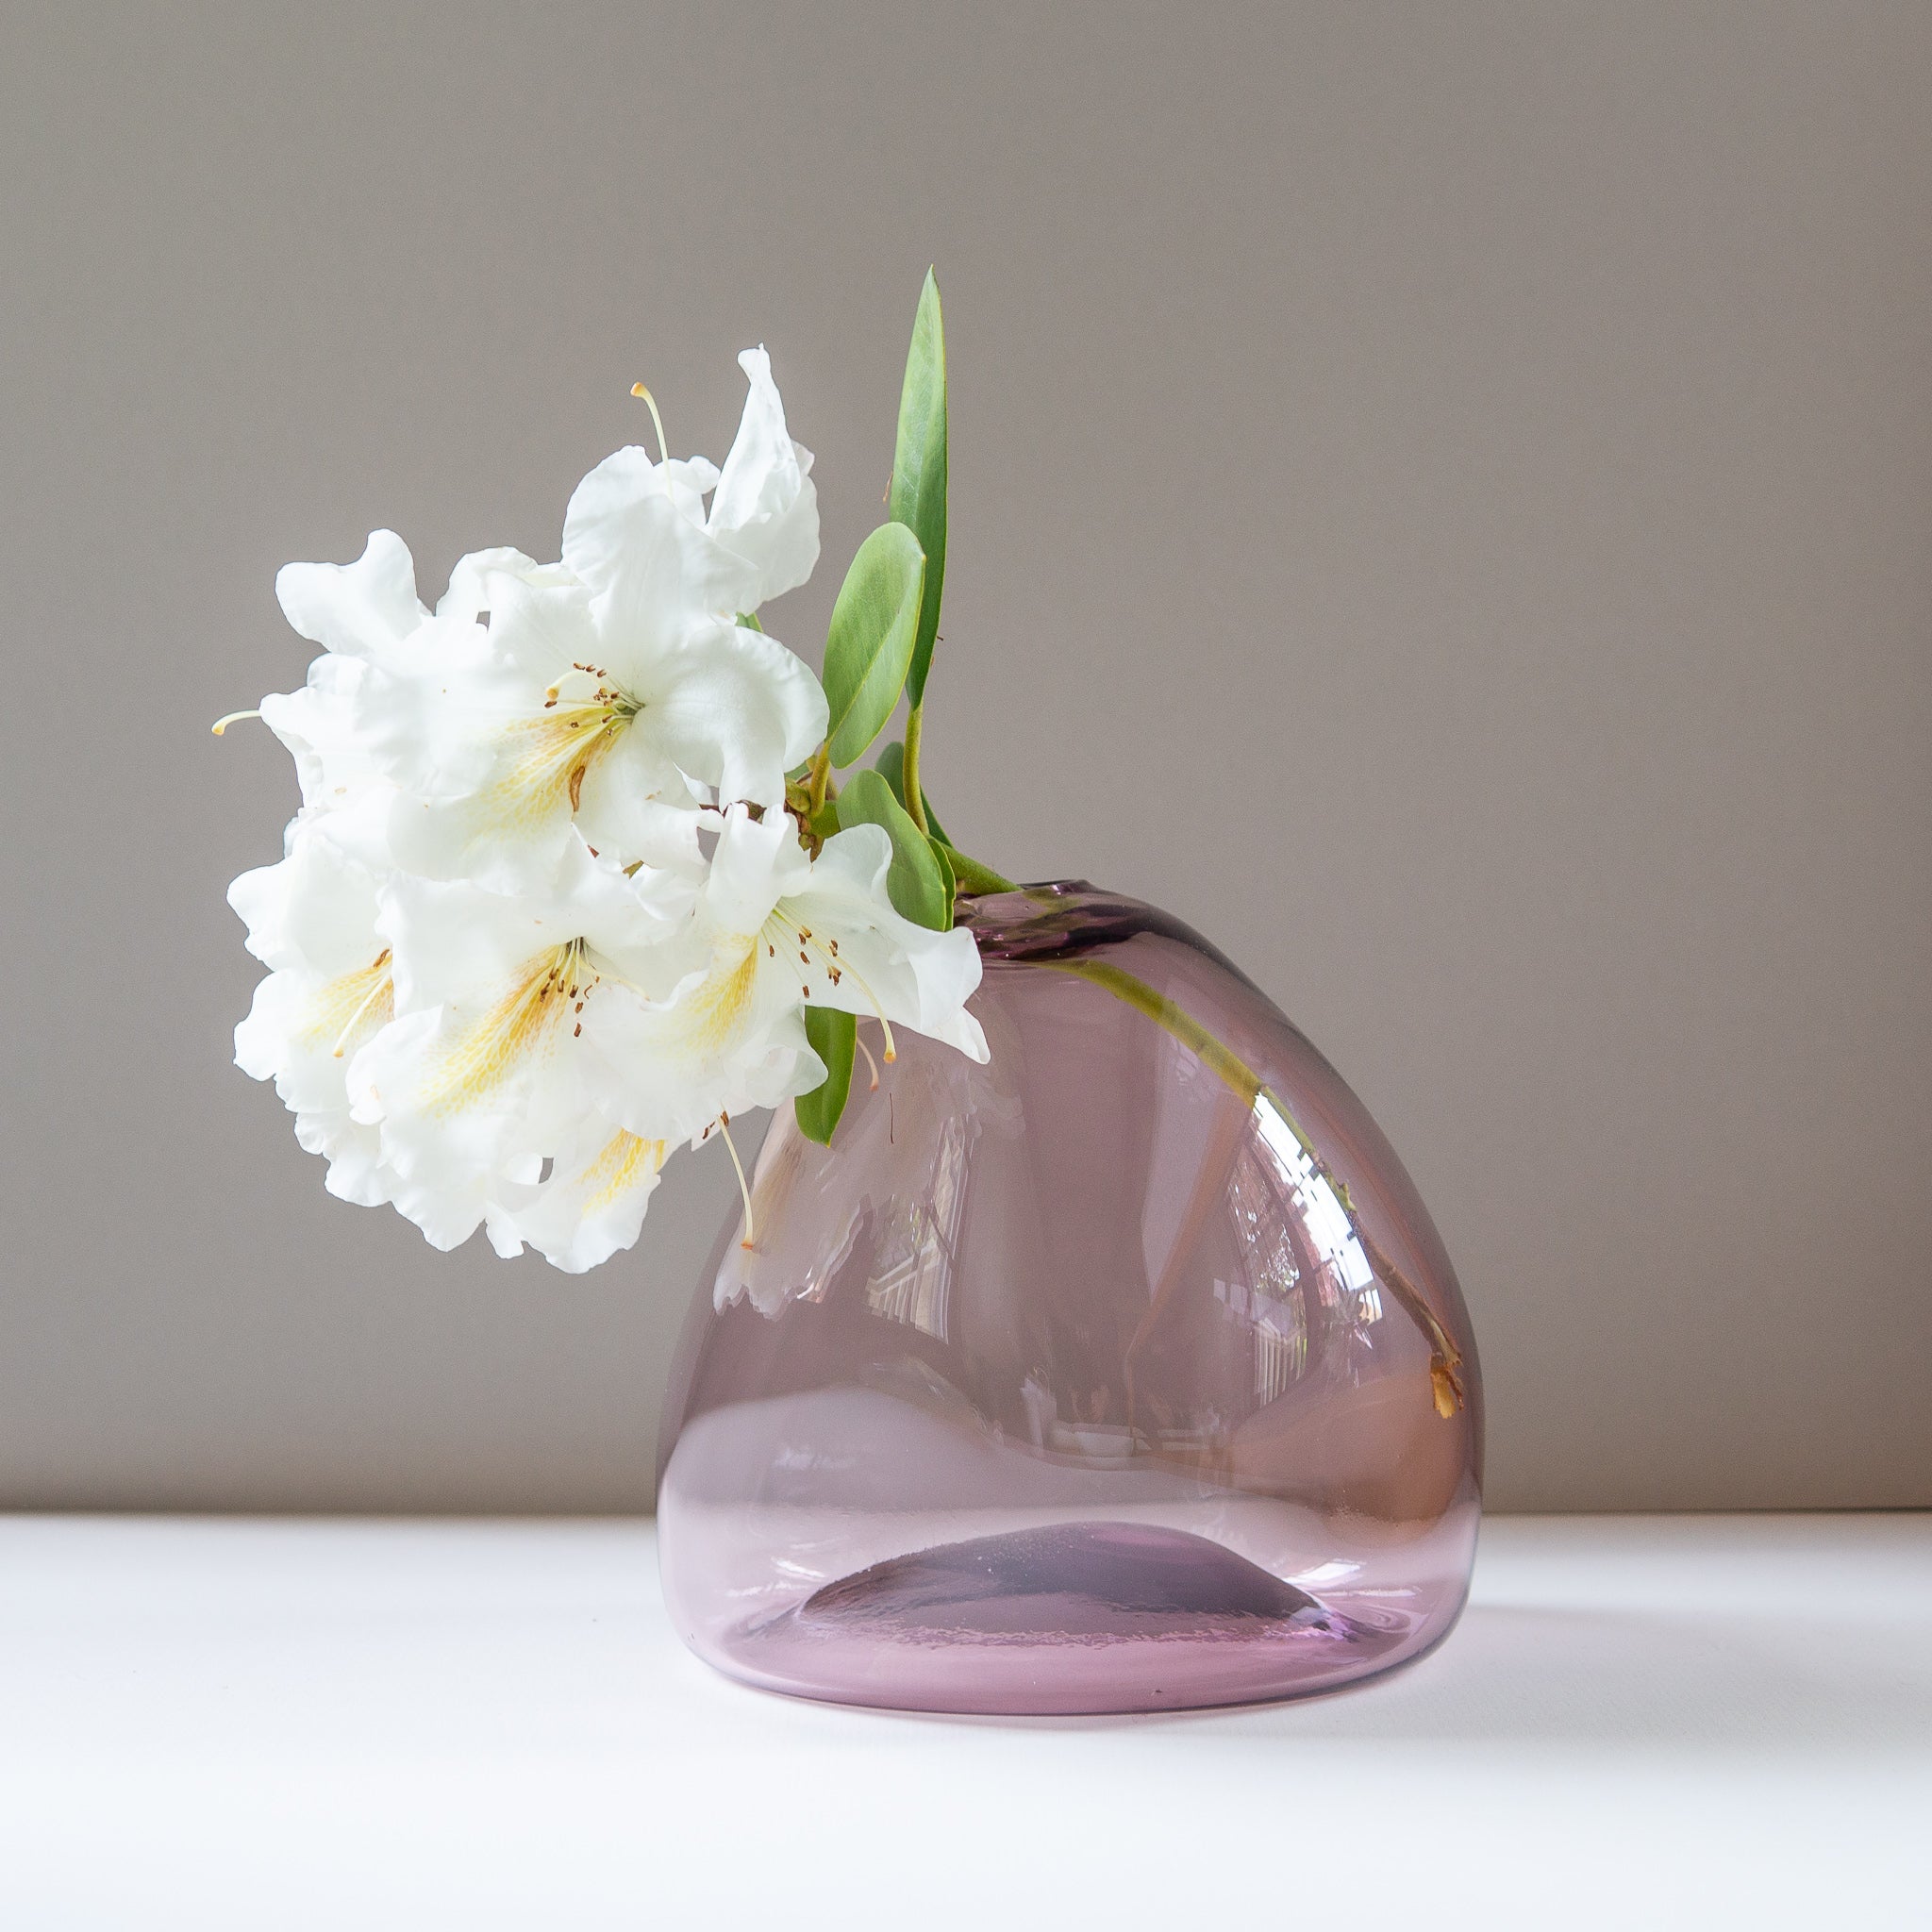 Gary Bodker: XL Purple Vase